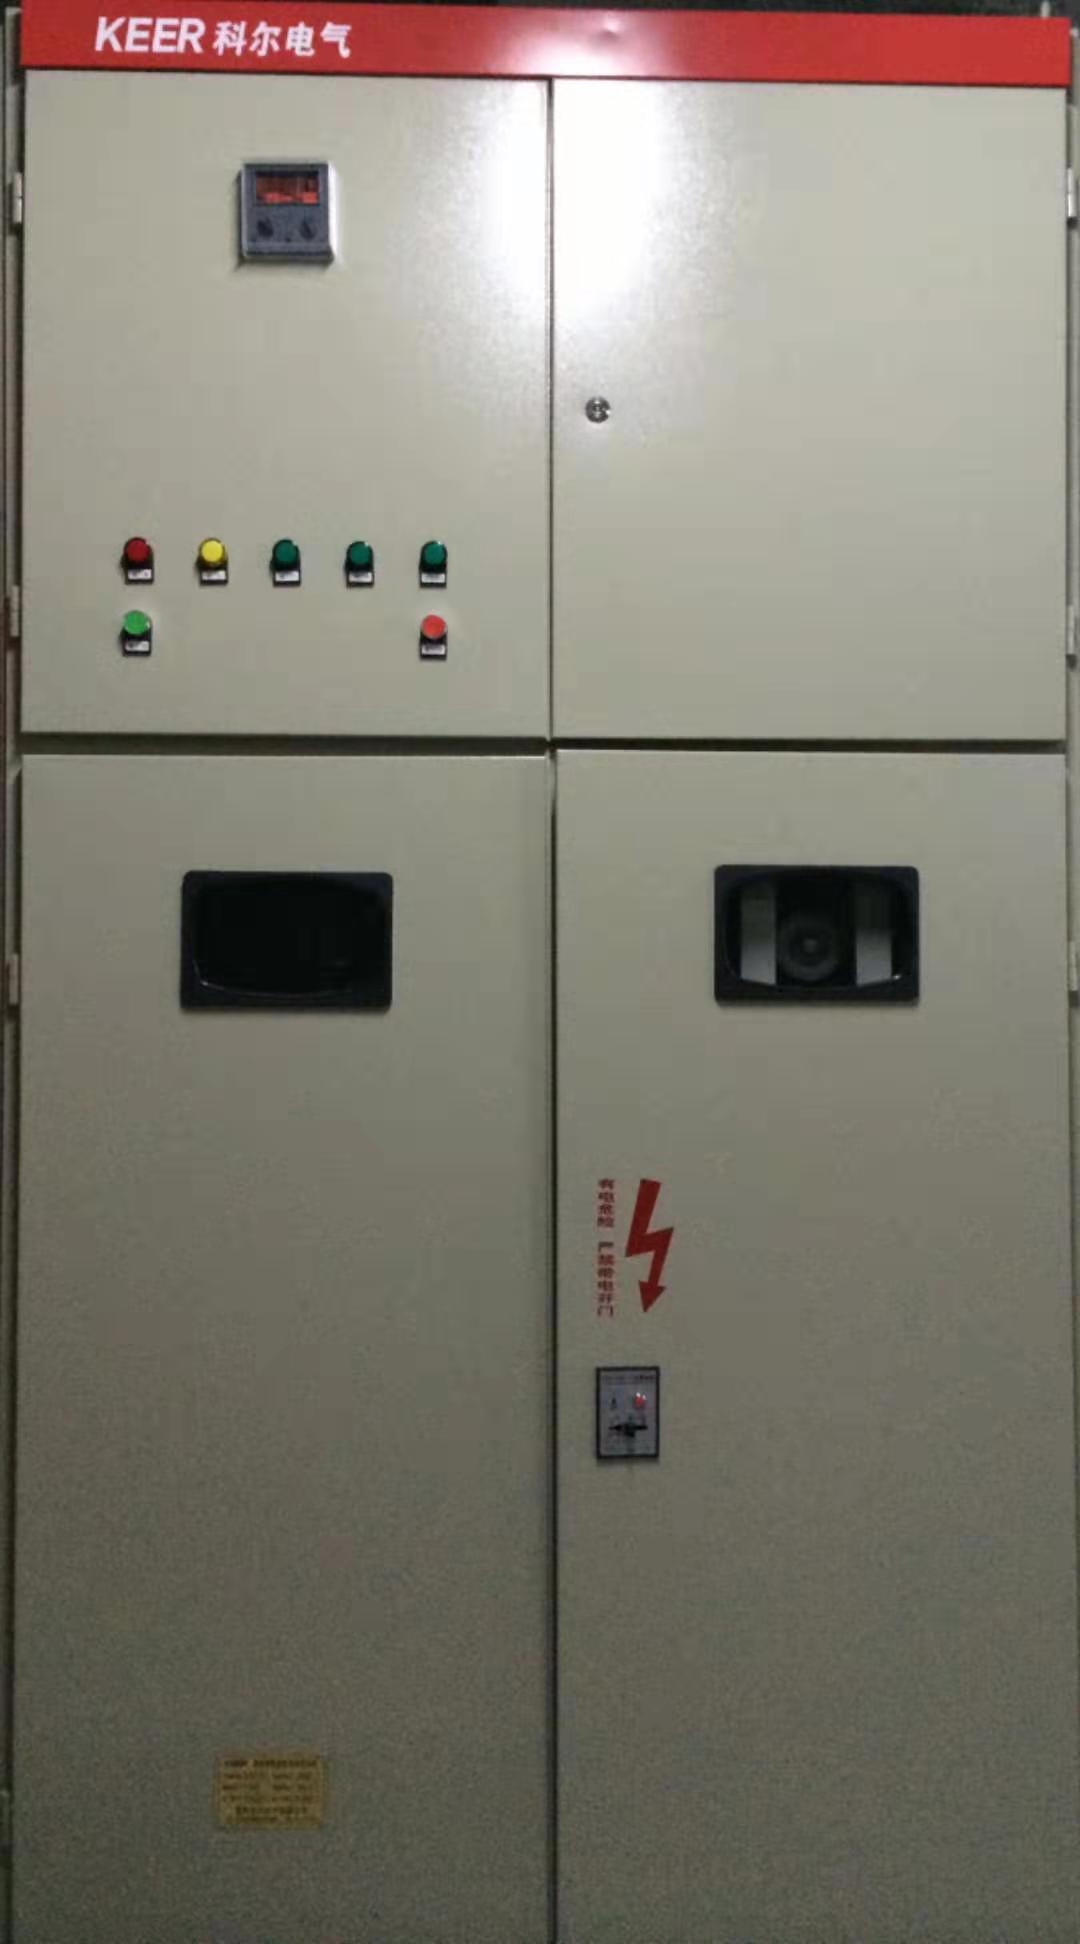 水阻柜选用科尔电气水阻柜 水阻柜,水电阻柜,水电阻启动柜,液阻柜,液阻启动柜